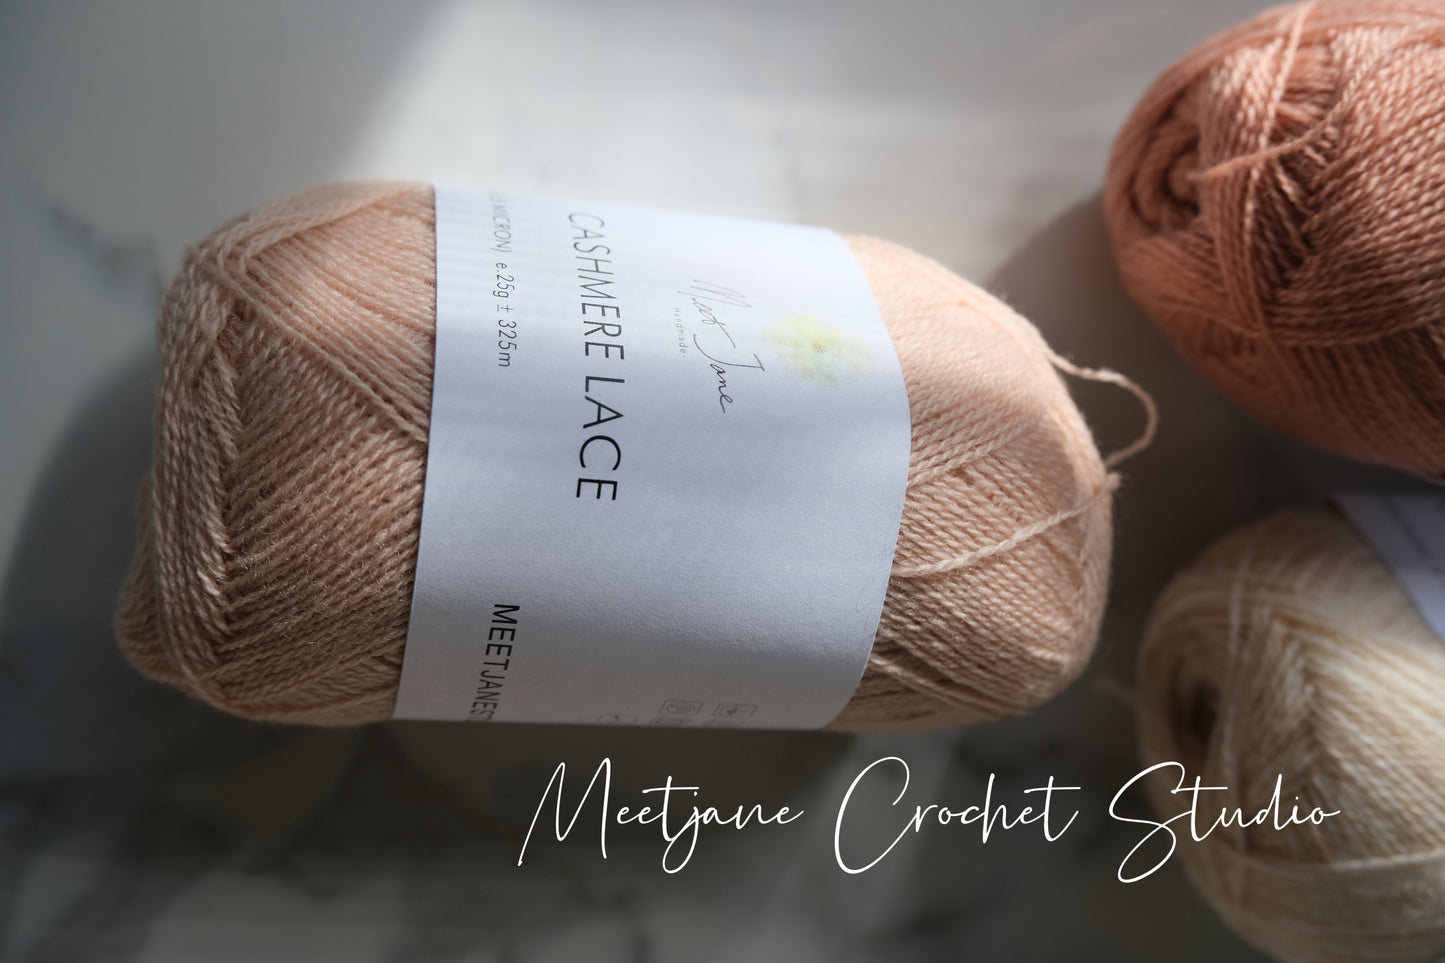 Crochet yarn|cashmere lace|25g|Autumn